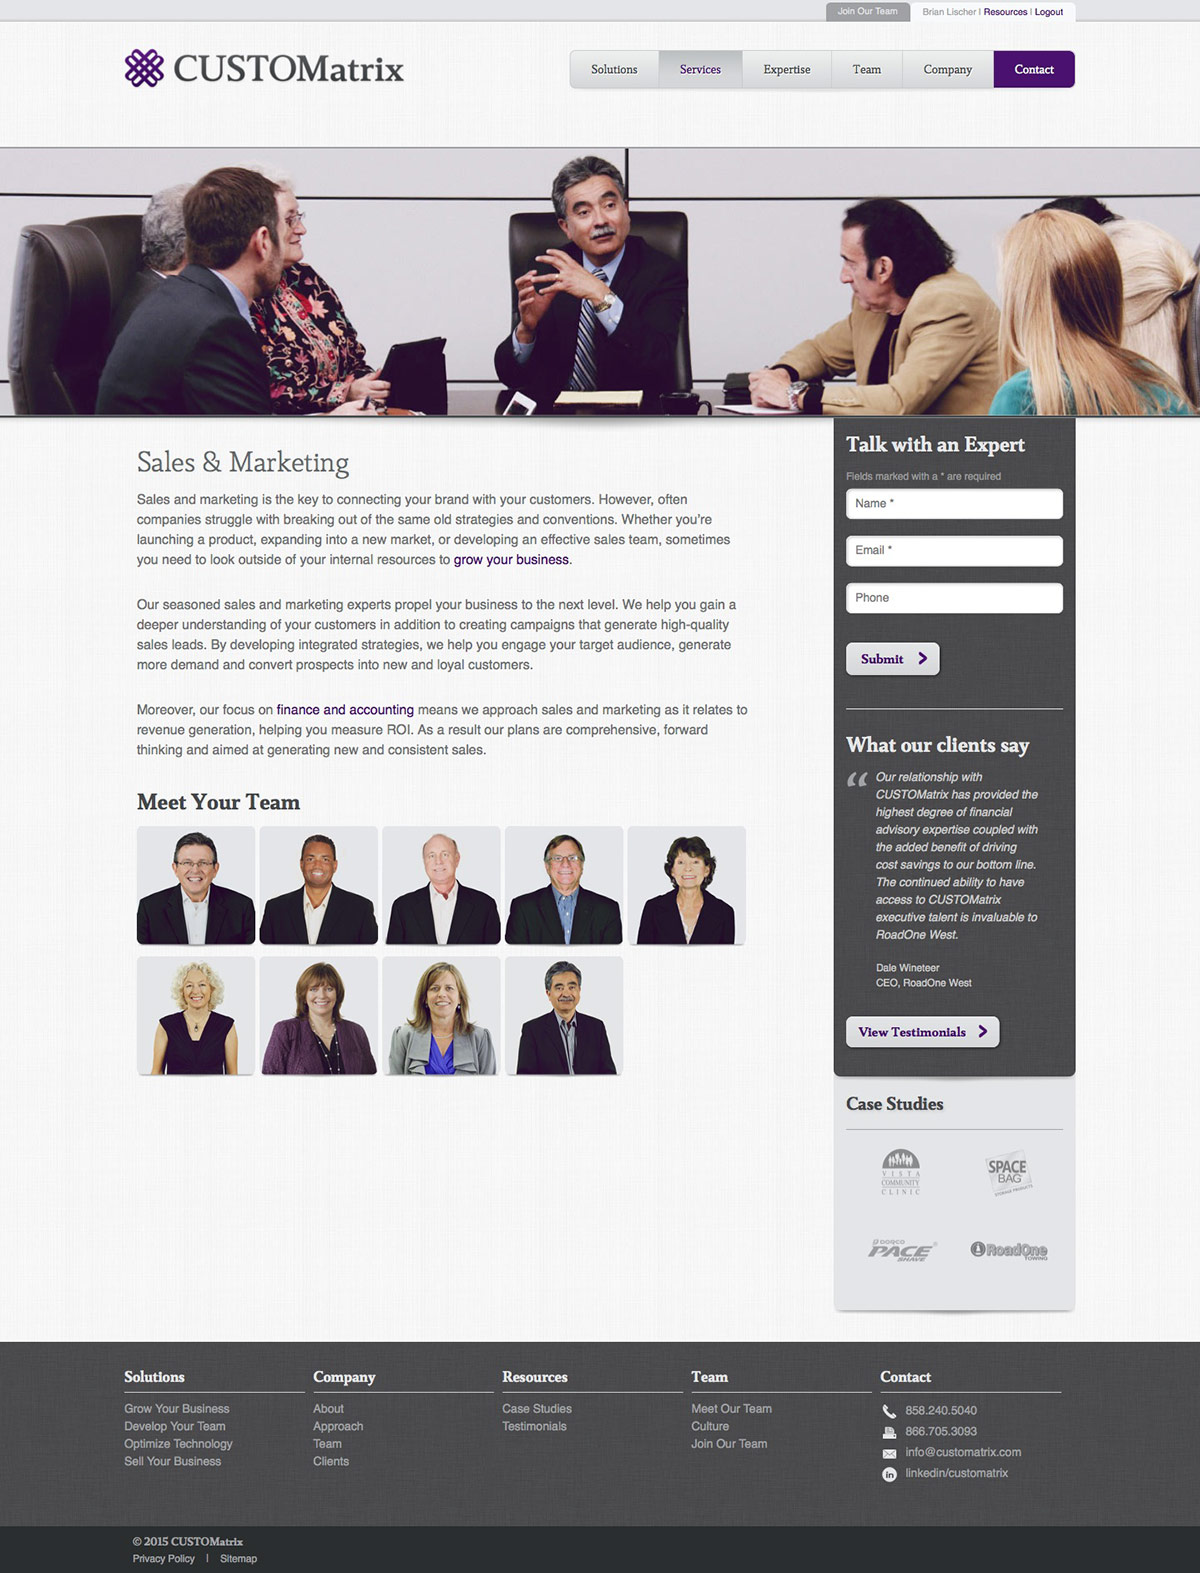 ignyte website design agency services